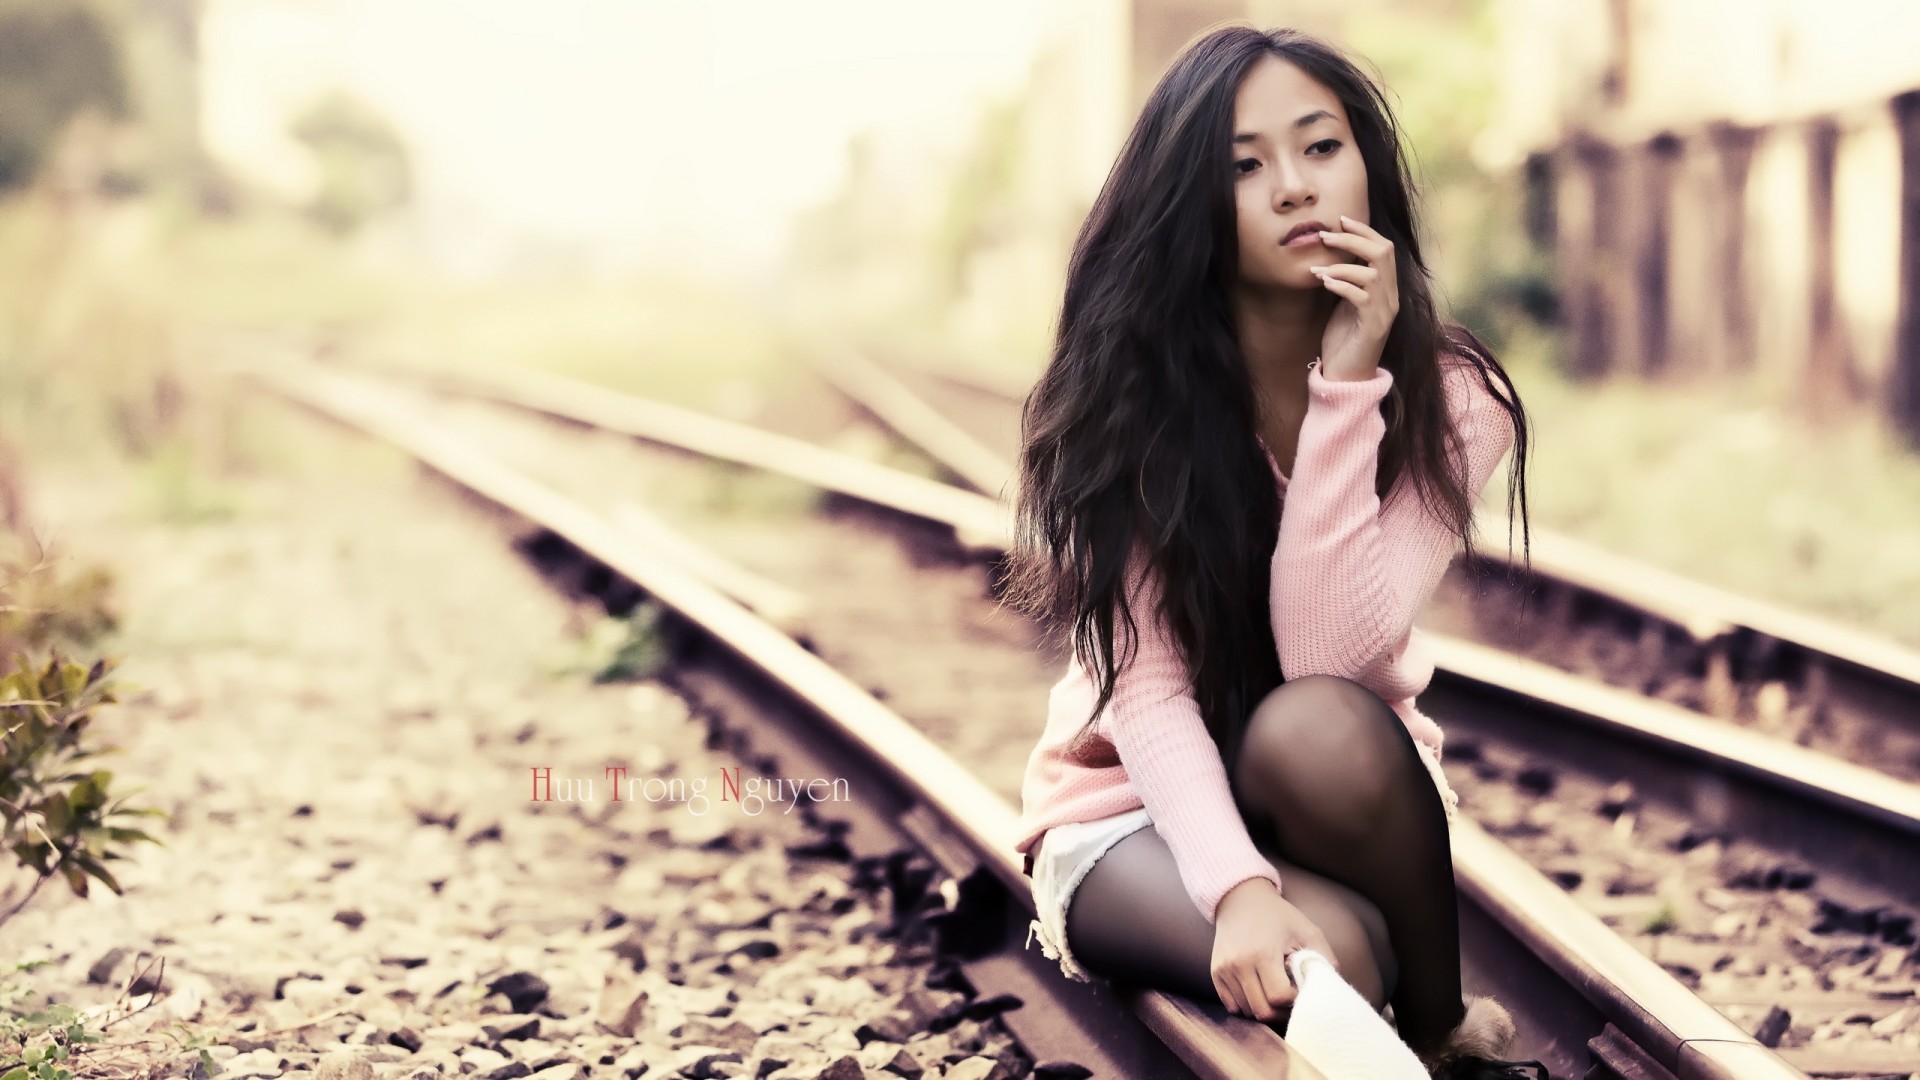 women model brunette long hair asian women outdoors jean shorts stockings sitting sweater railway depth of field Wallpaper